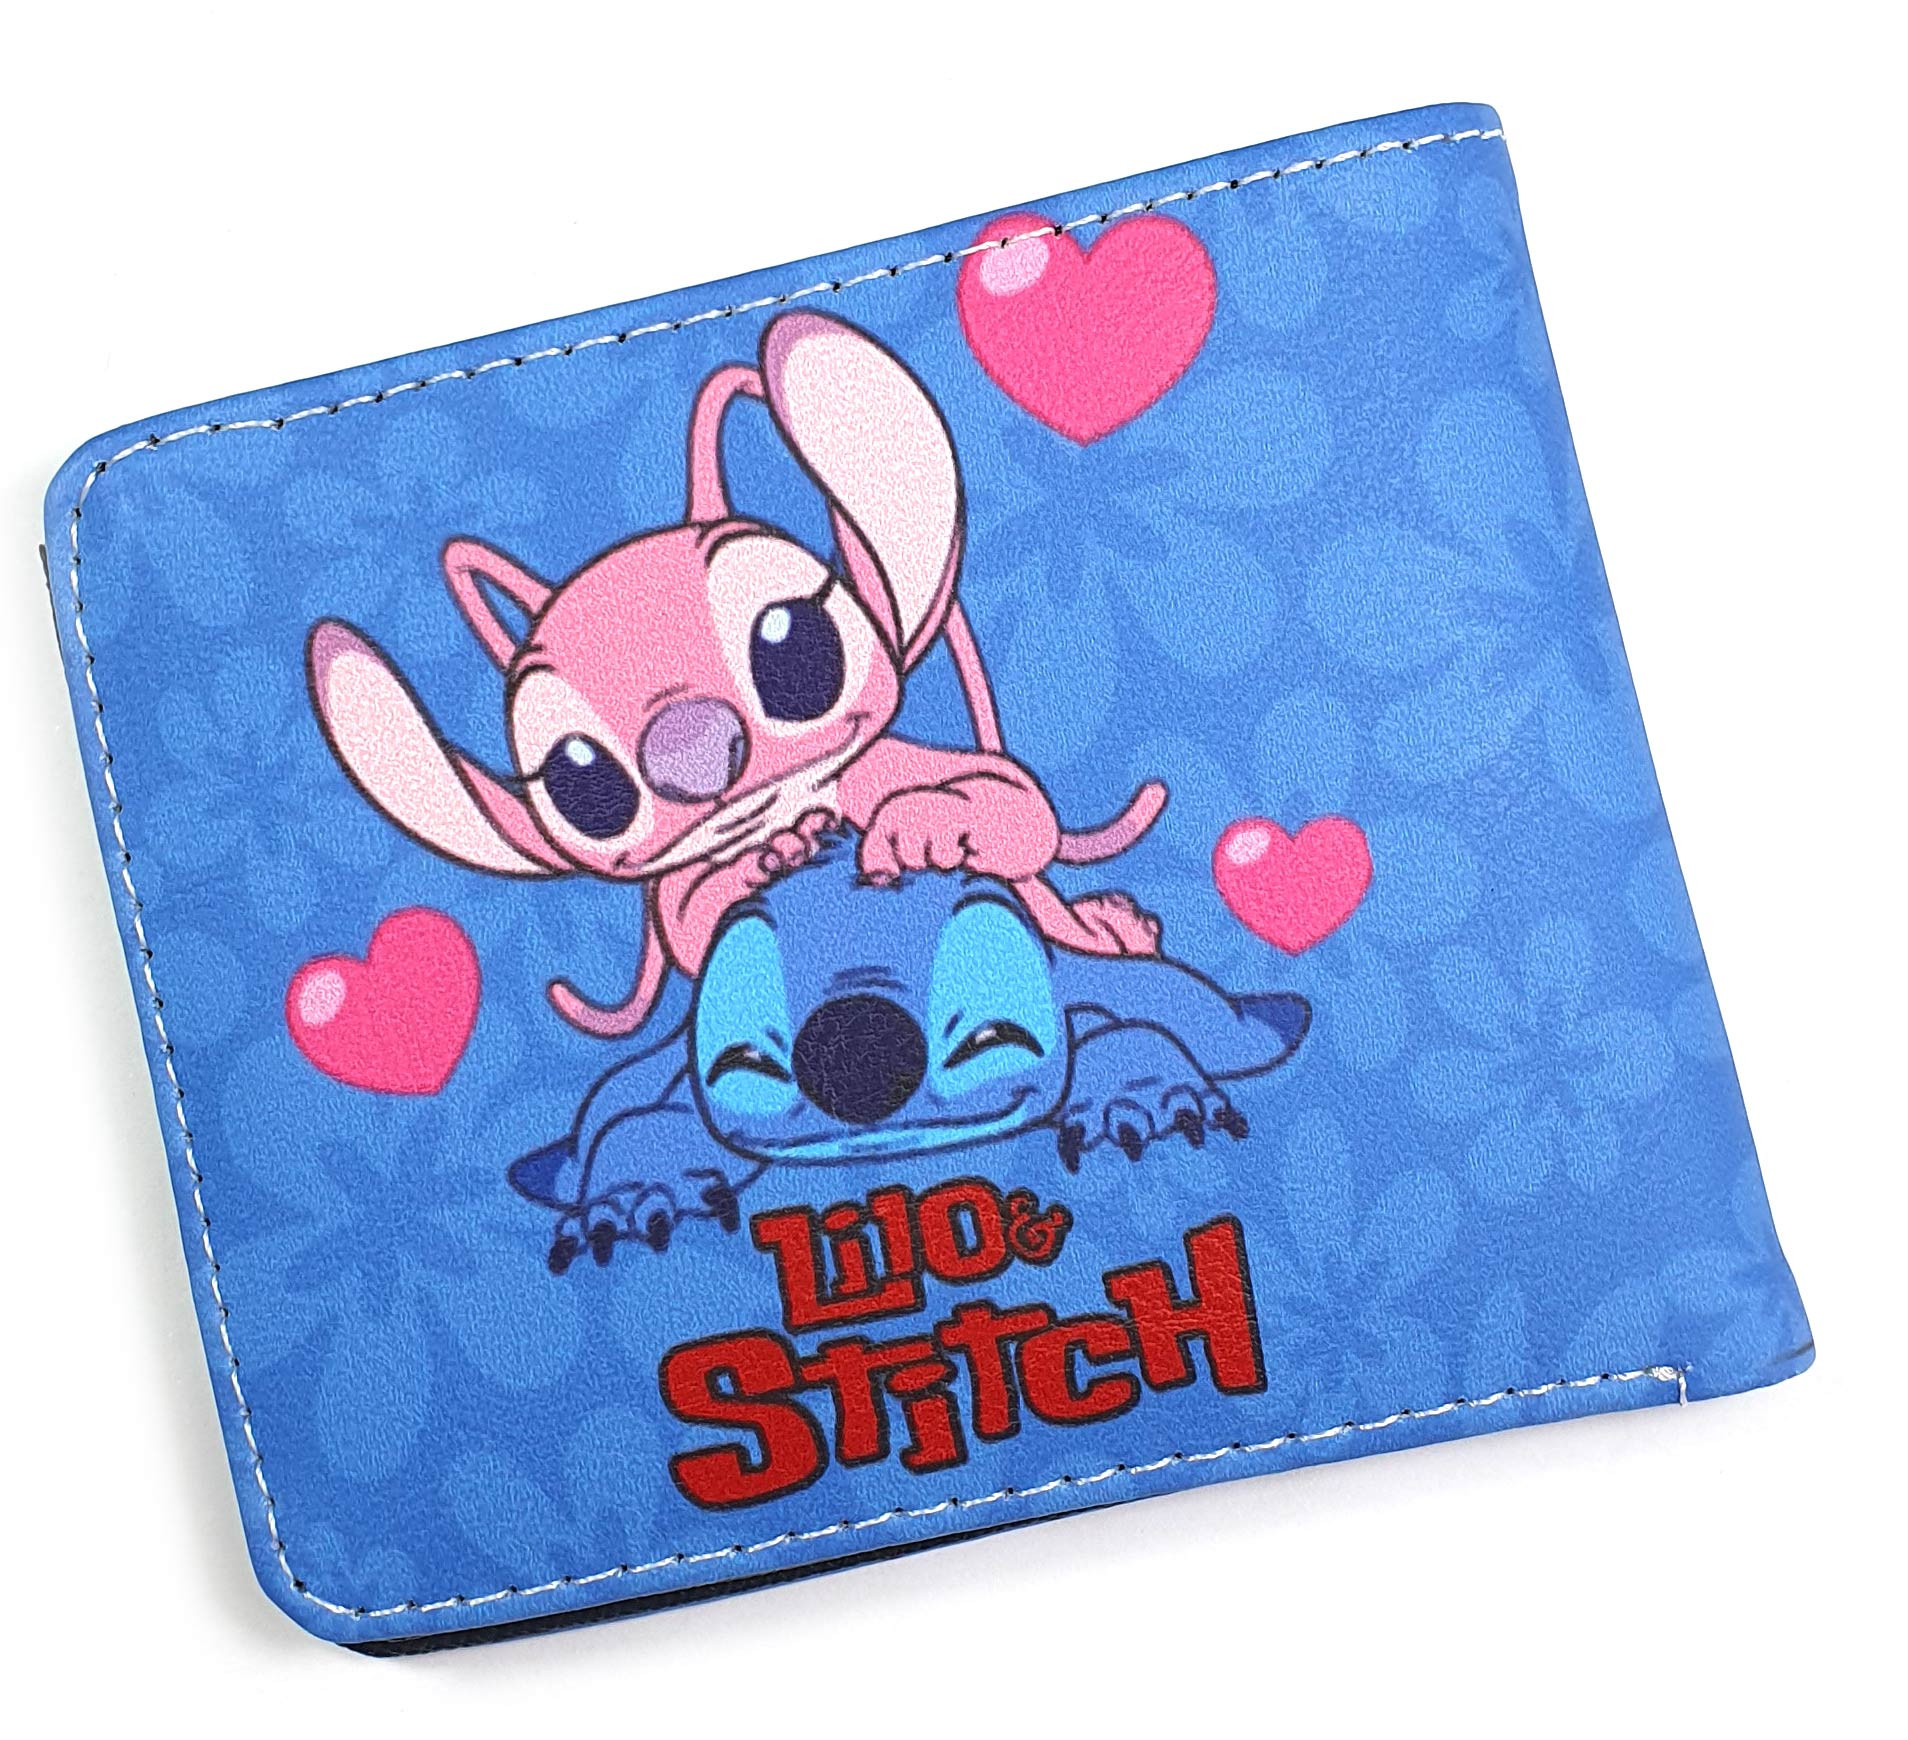 Disney-pendientes de Metal de Lilo & Stitch para mujer y niña